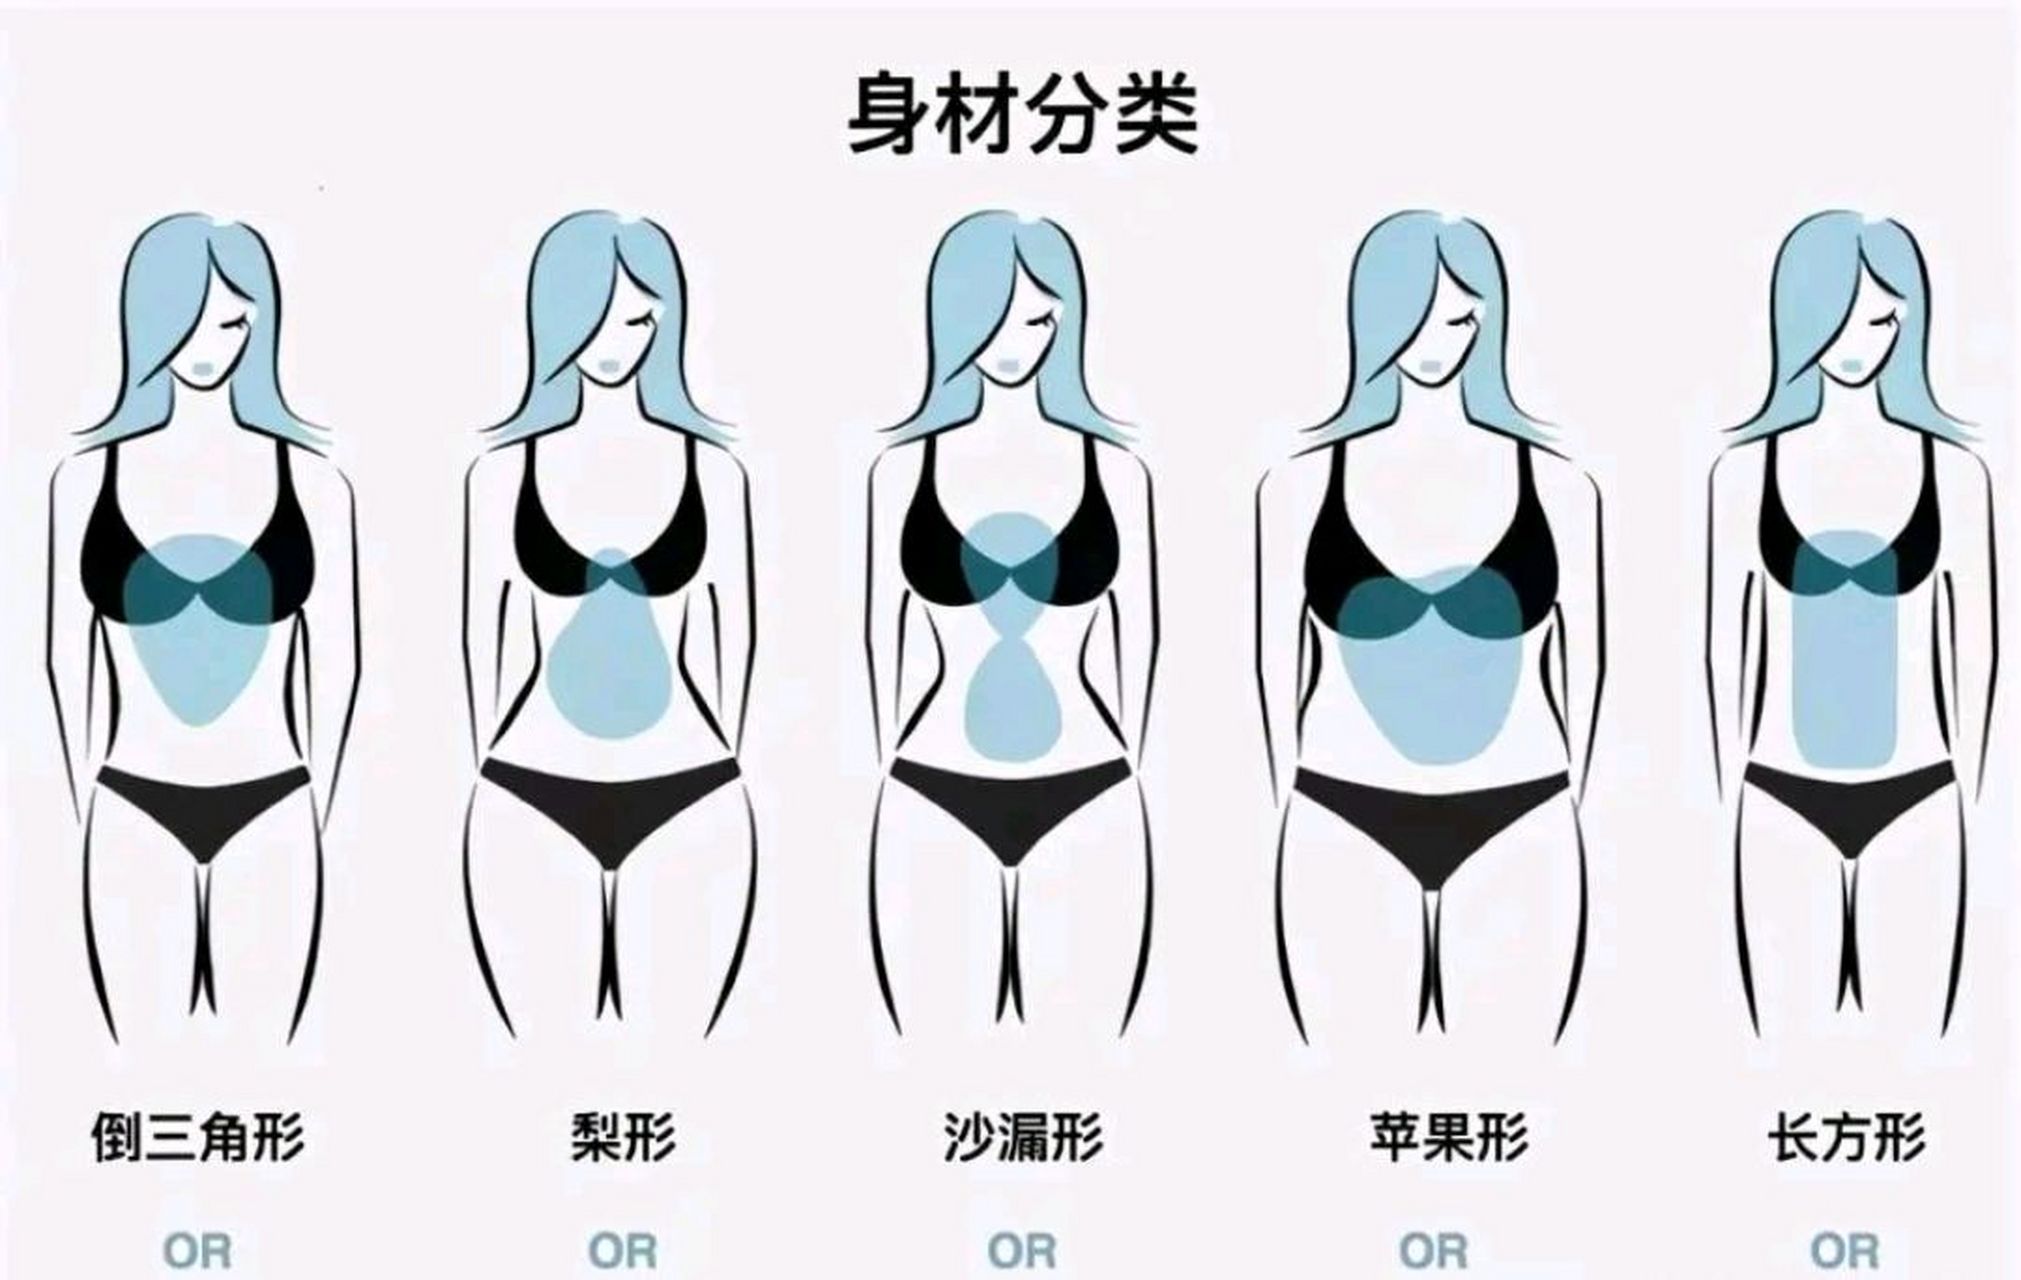 5种女生身材类型,大多数人认为沙漏型身材是最理想的,大家觉得呢!